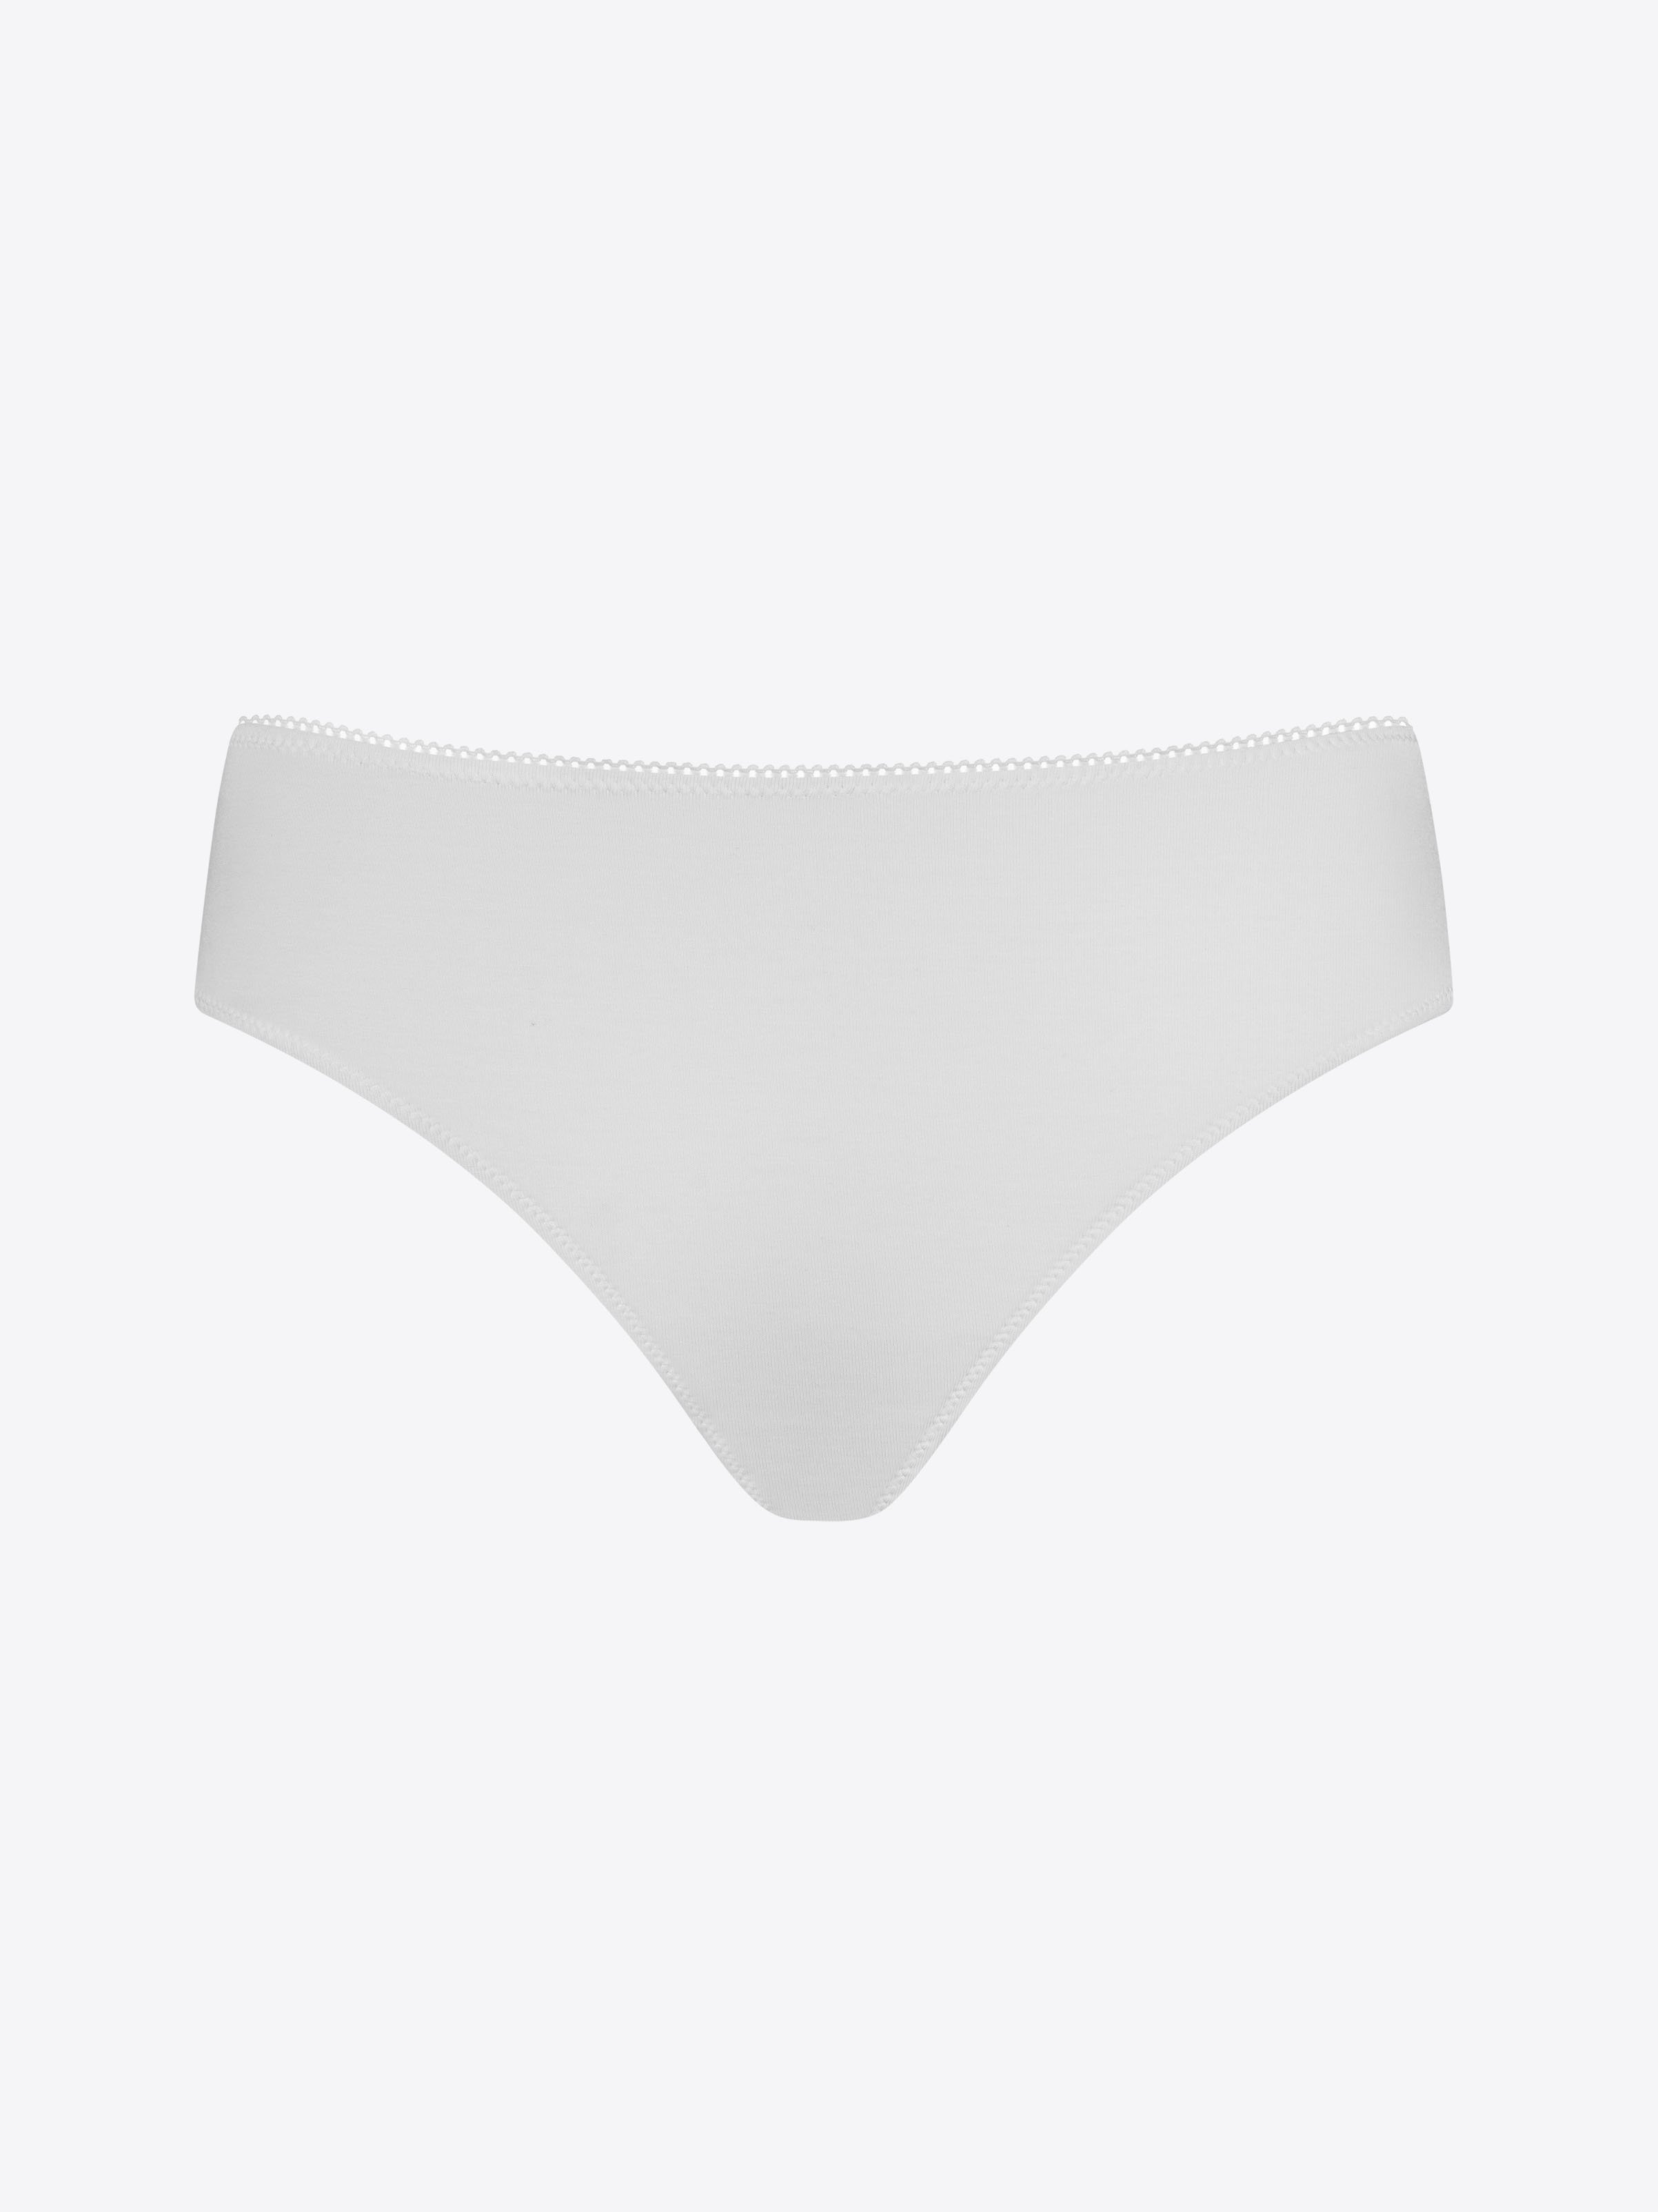 Leolines, LLC ™ 10% OFF LYCRA White Style Sampler 3-pack Panties